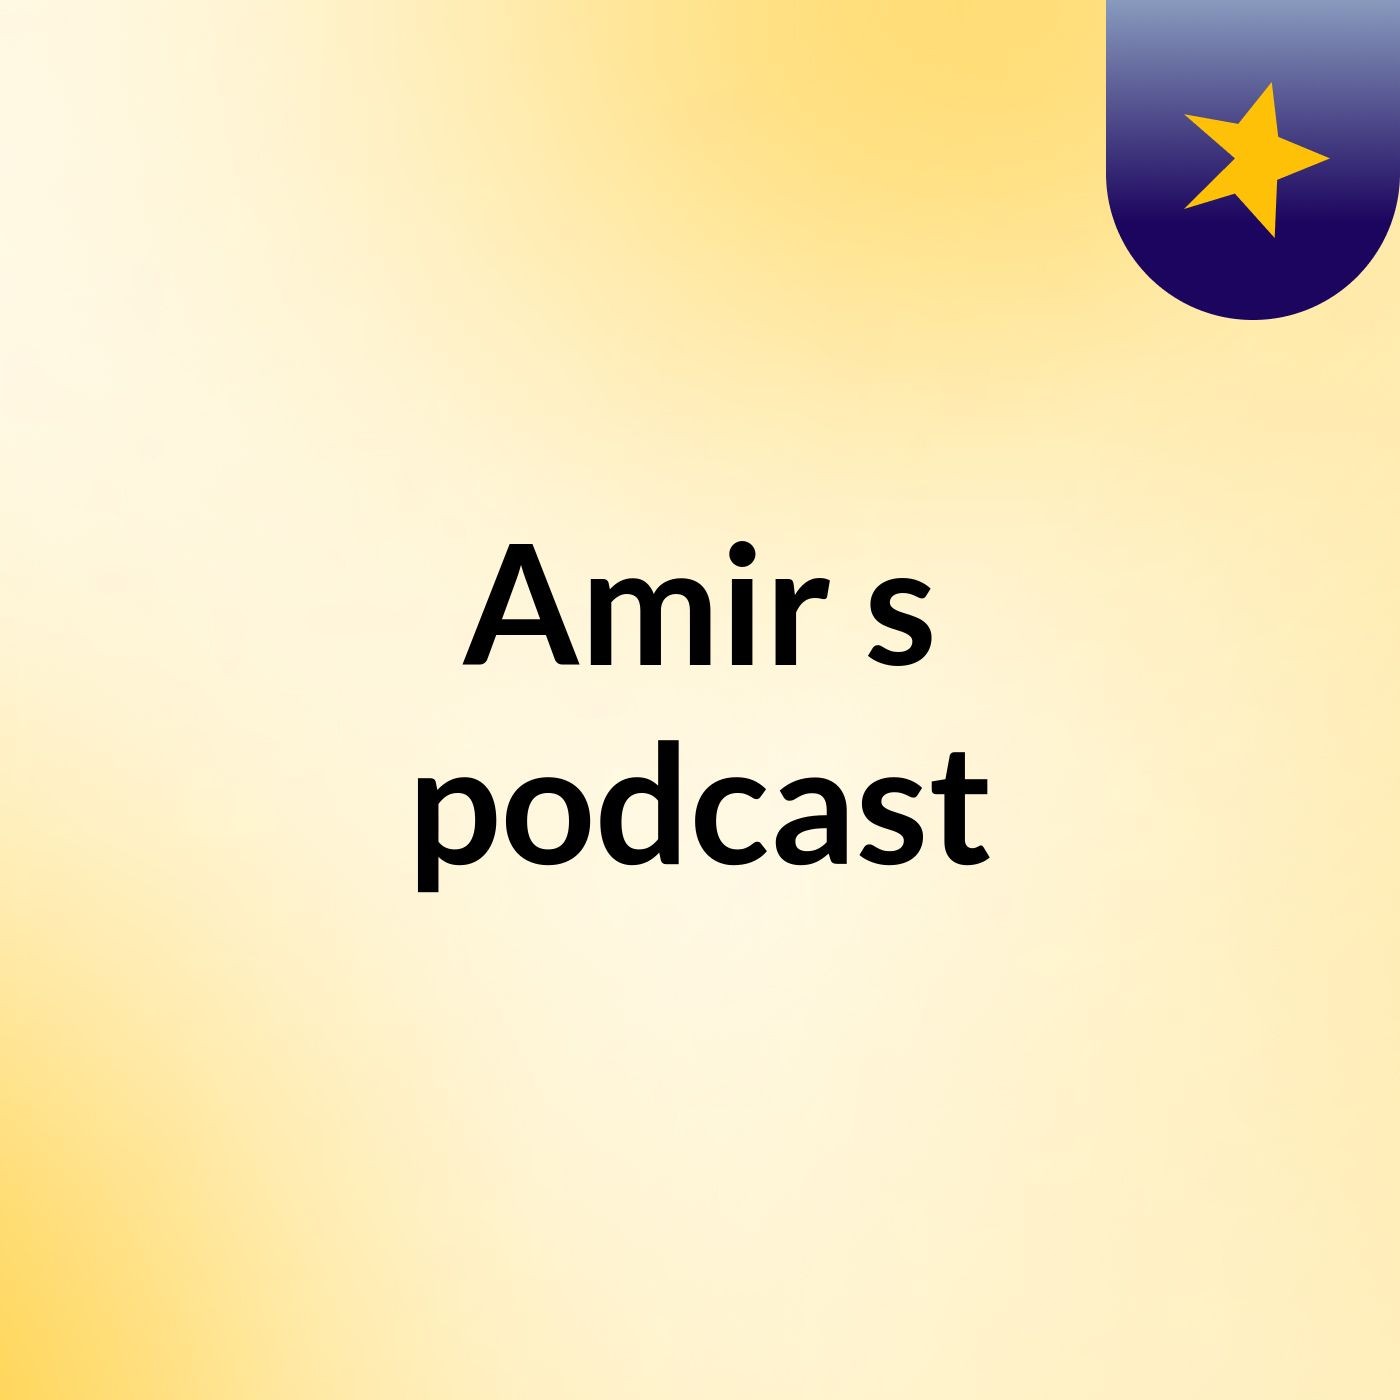 Amir's podcast